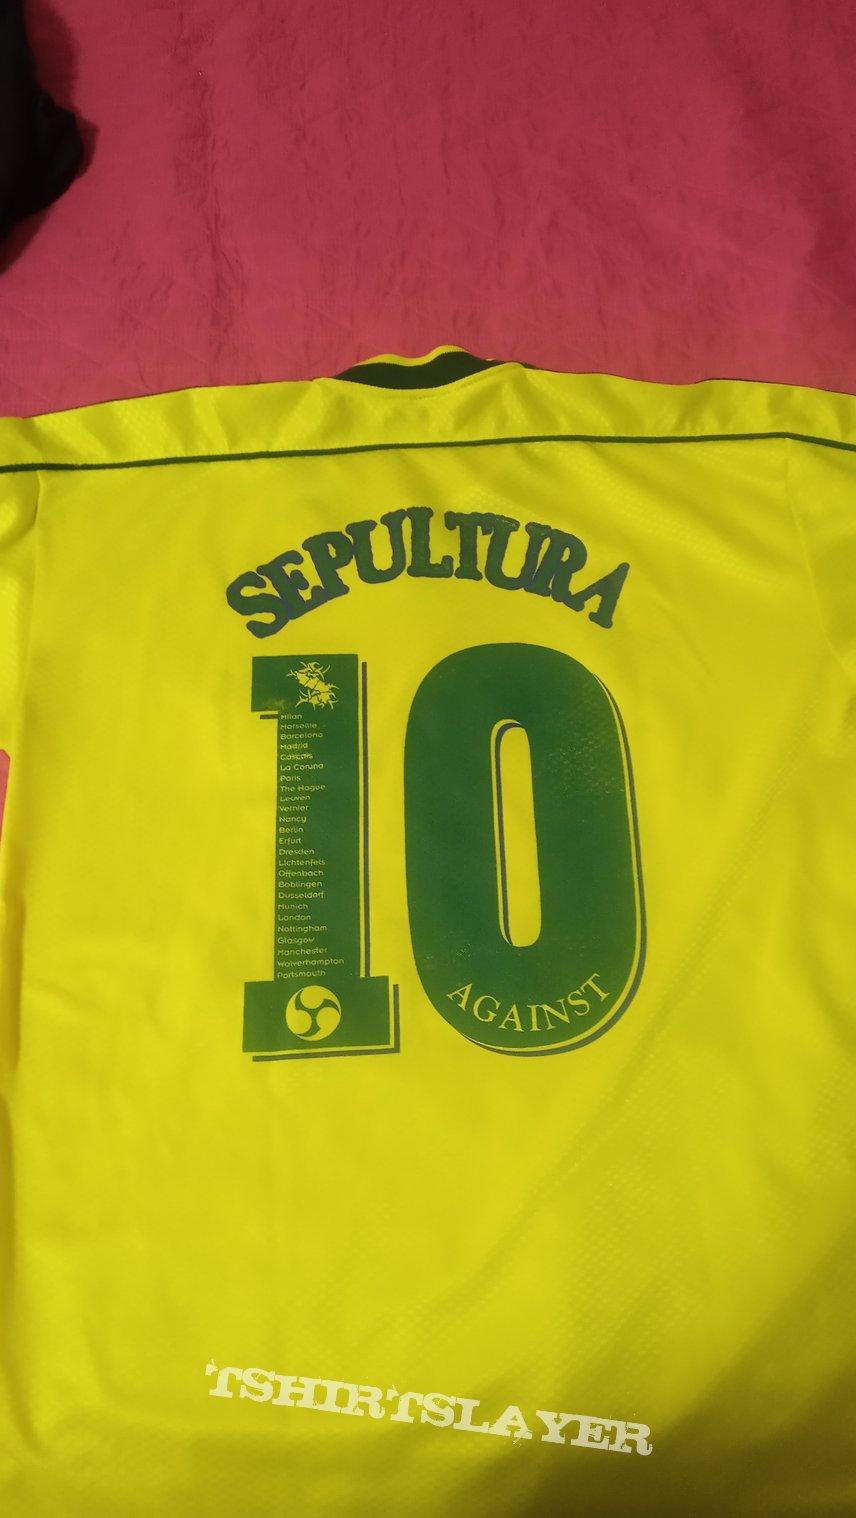 Sepultura &quot;Against 1998 tour&quot; football tshirt